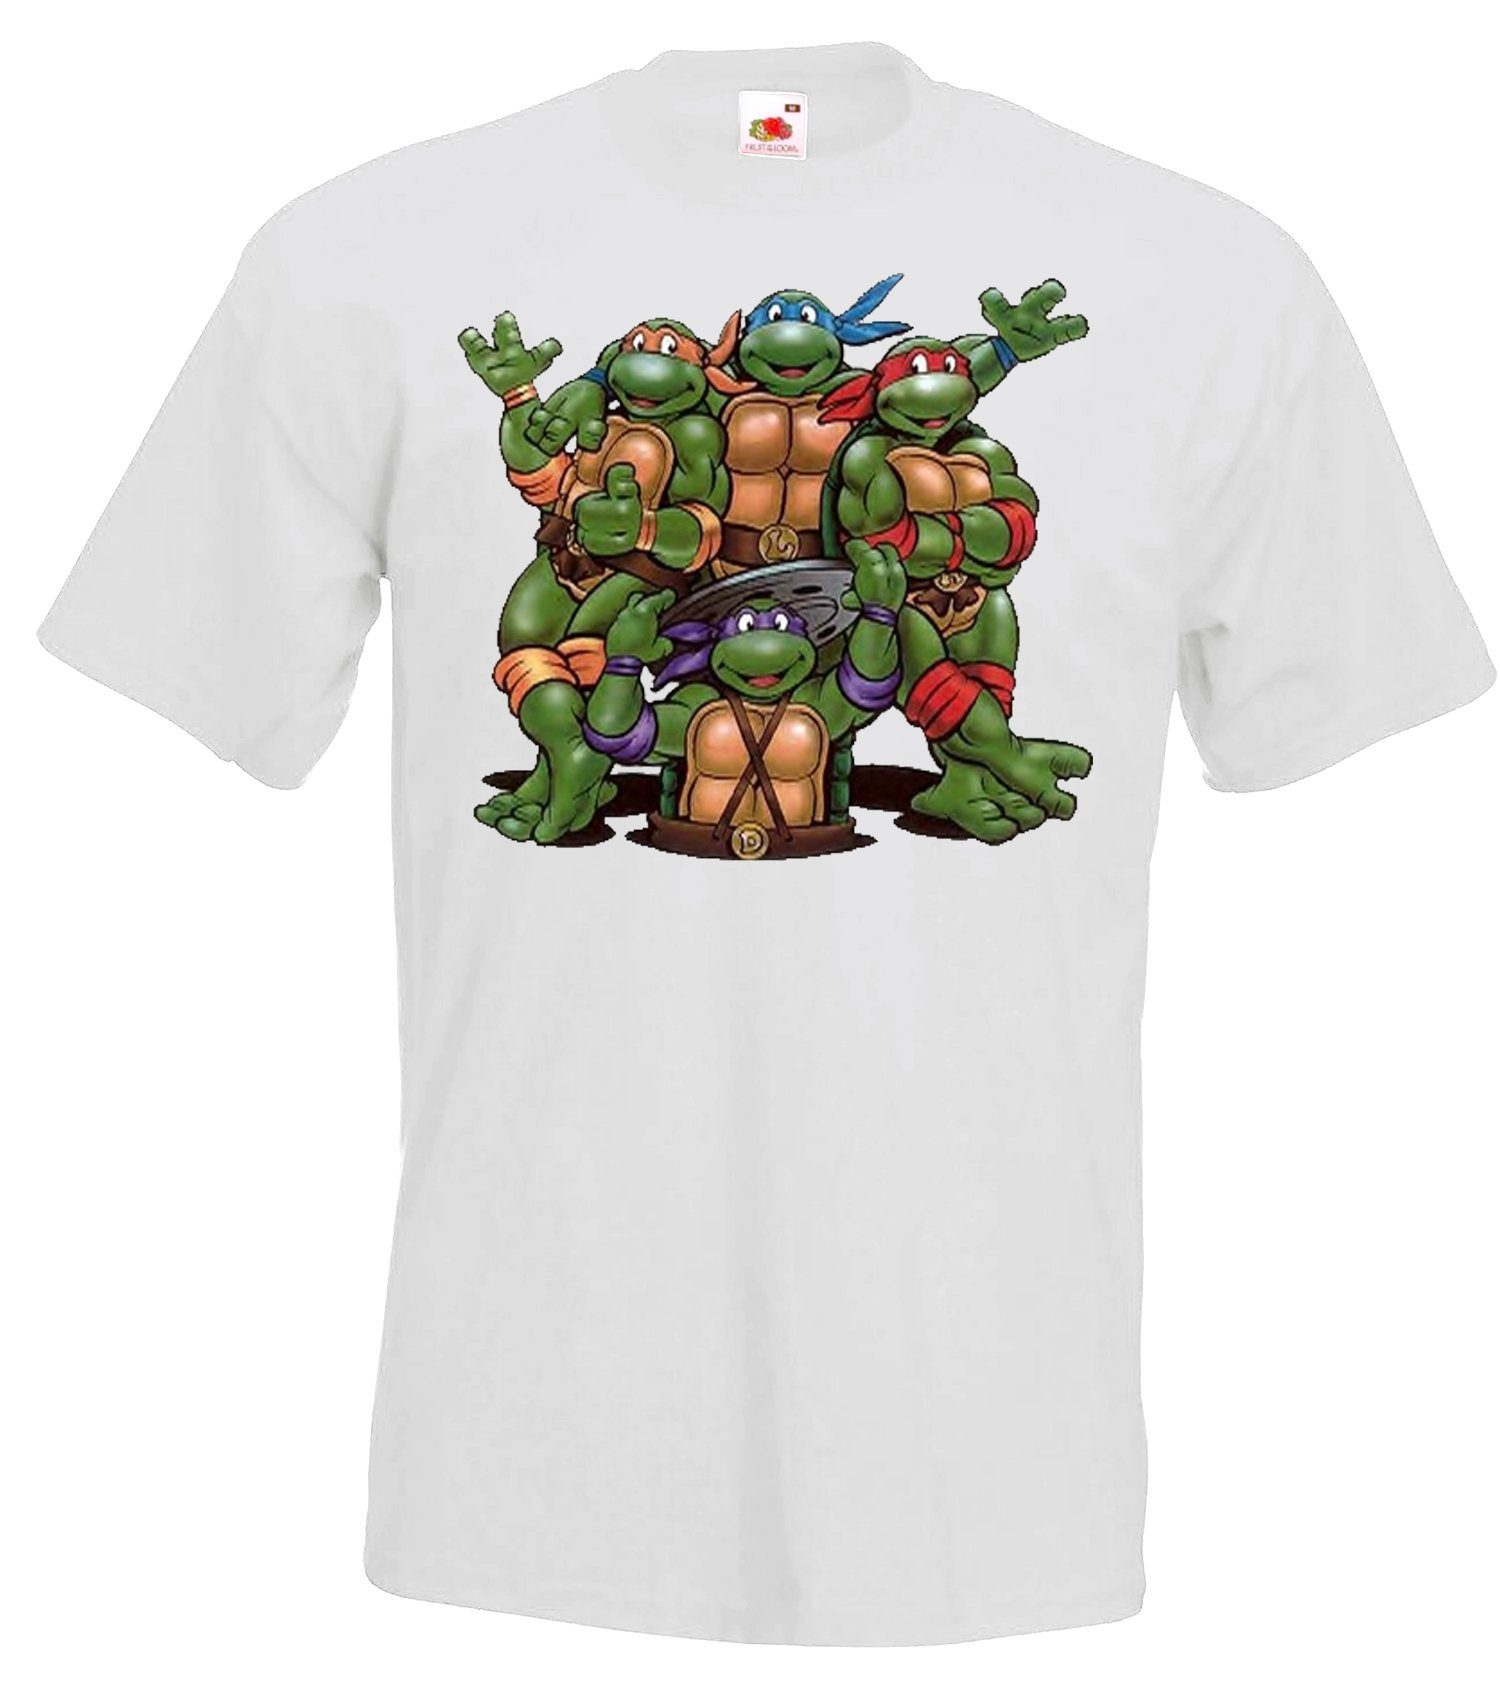 Weiß T-Shirt Bande für Frontprint T-Shirt mit Turtles Designz trendigem Herren Youth